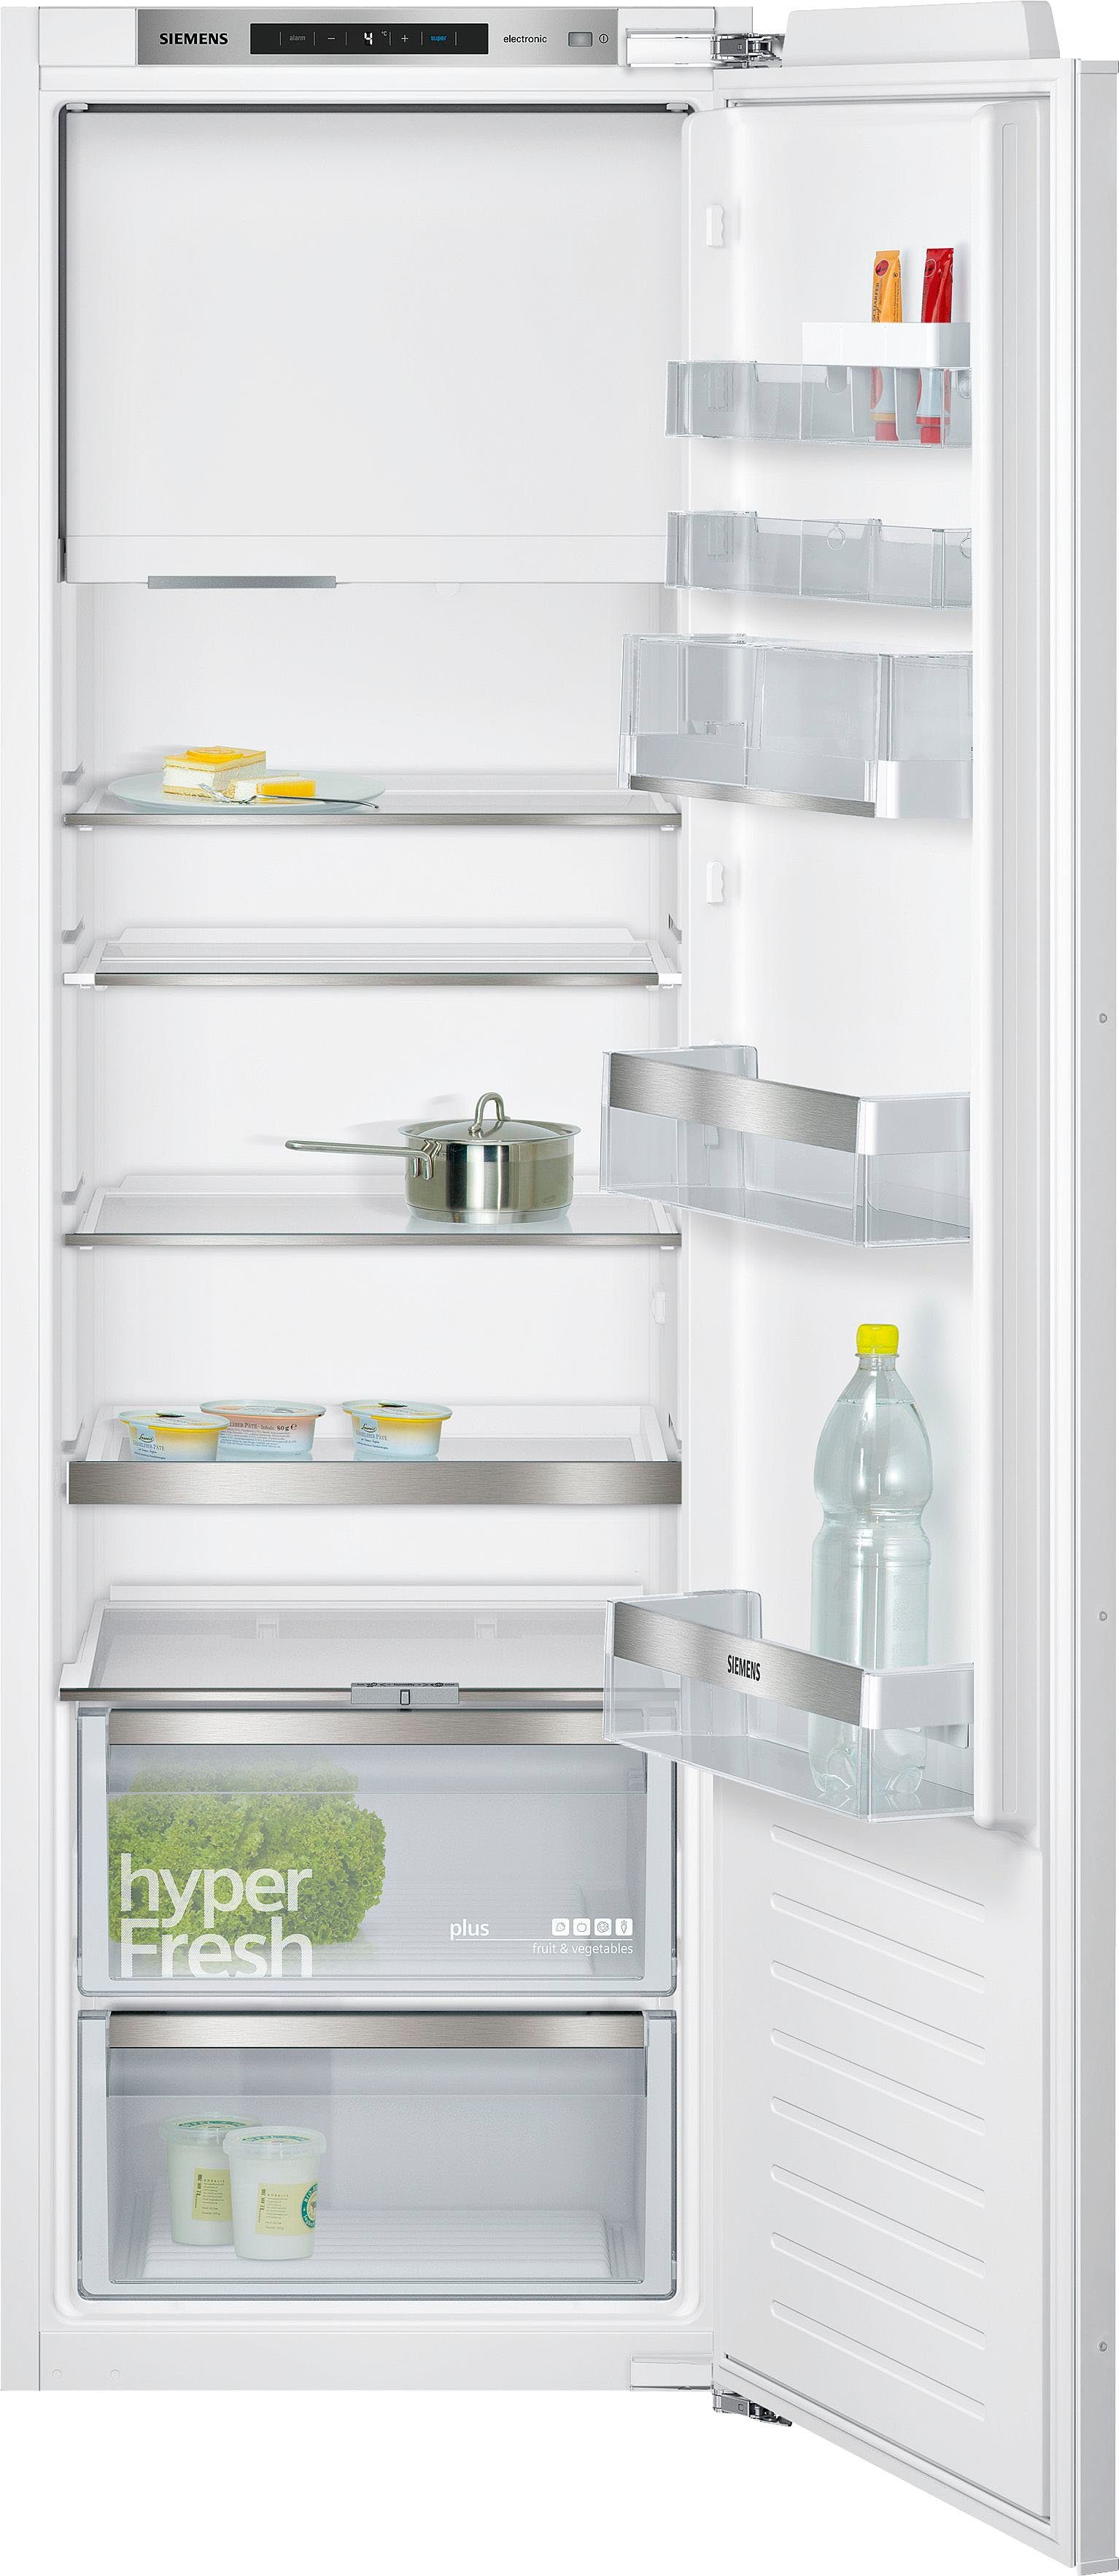 SIEMENS Einbaukühlschrank iQ500 KI82LADF0, 177,2 cm hoch, 56 cm breit  online kaufen | OTTO